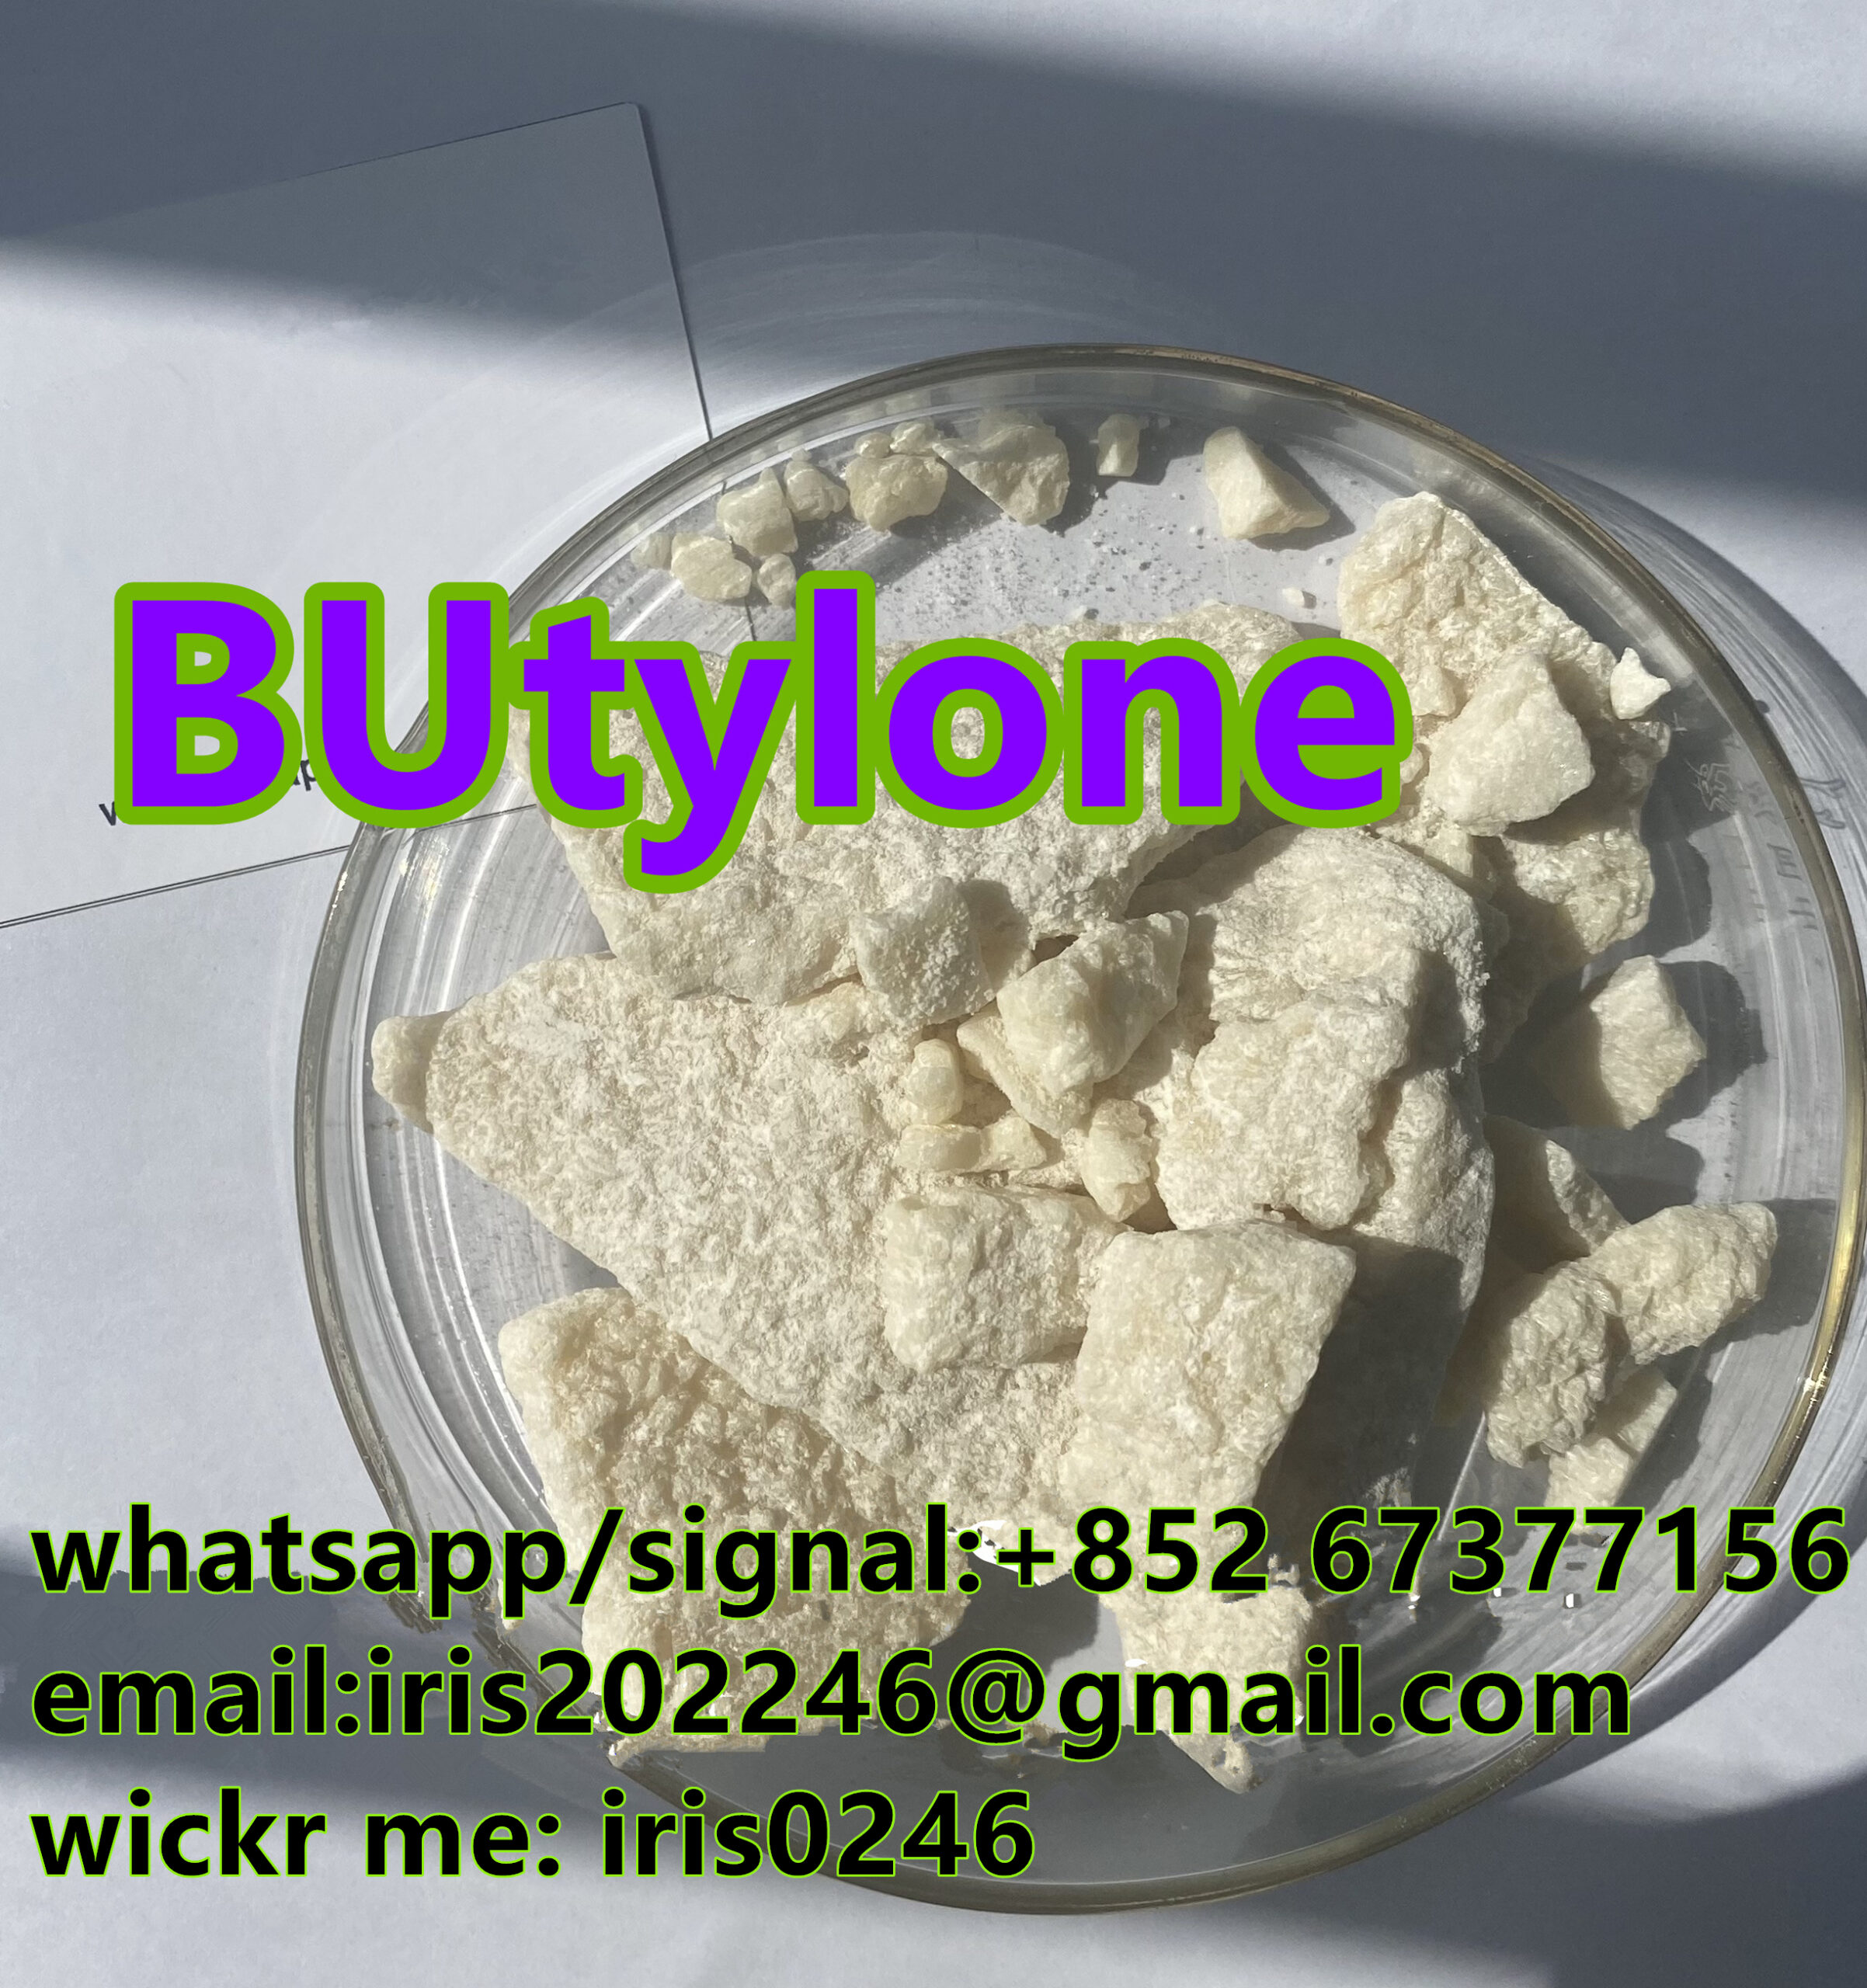 eutylone molly euty ethylone butylone bkmbdb mdpbp pentylone whatsapp:+85267377156